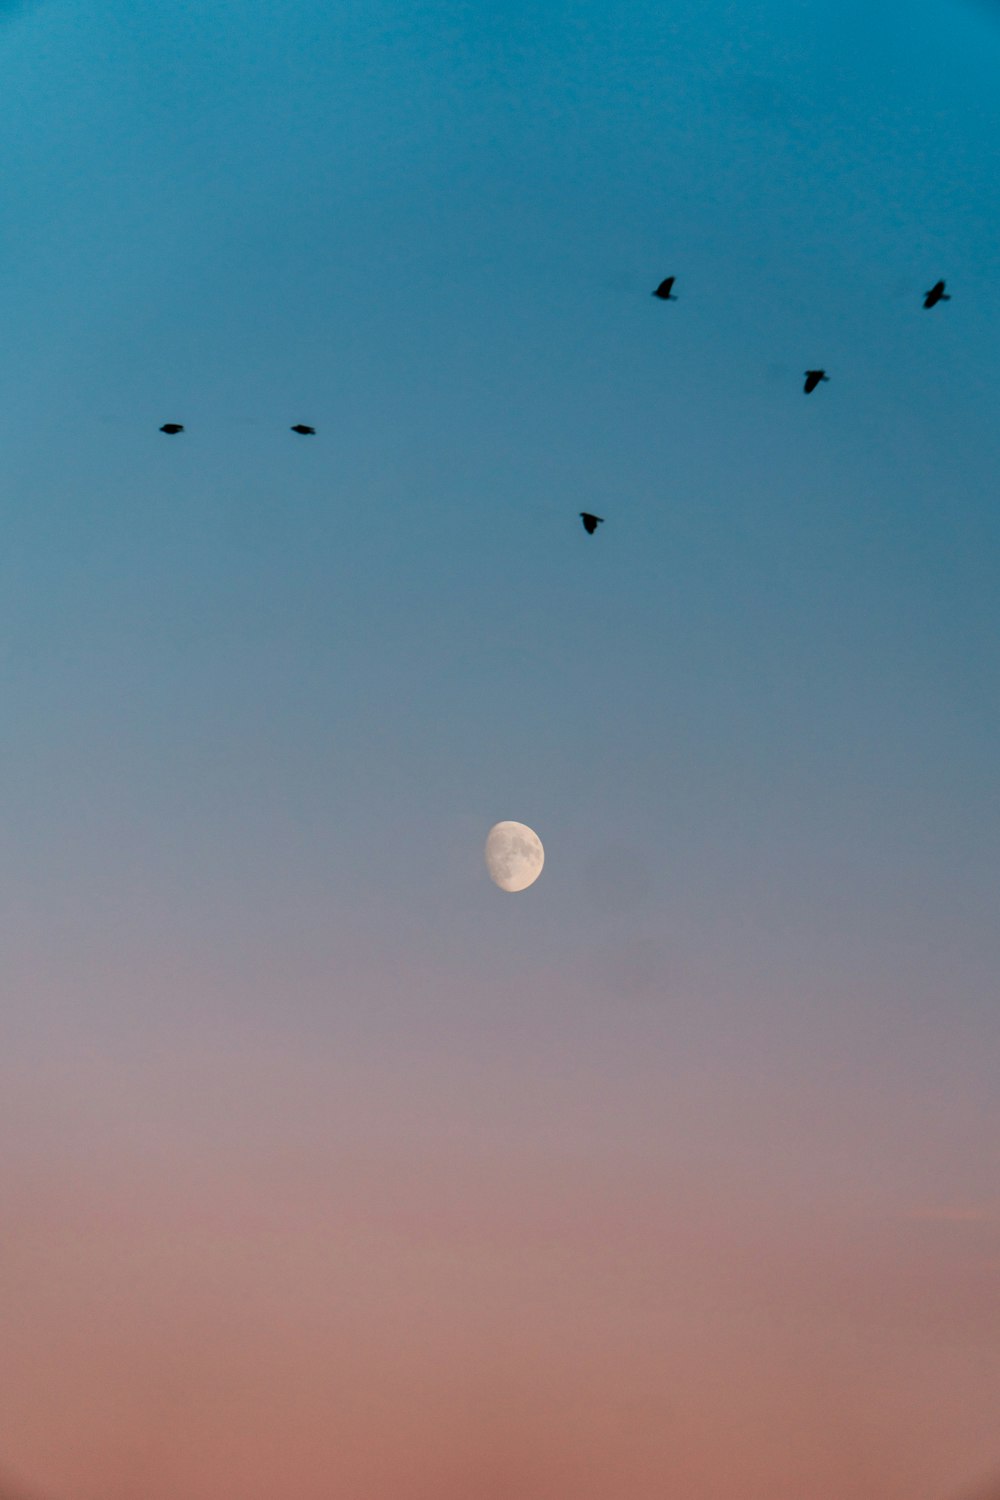 una bandada de pájaros volando a través de un cielo azul